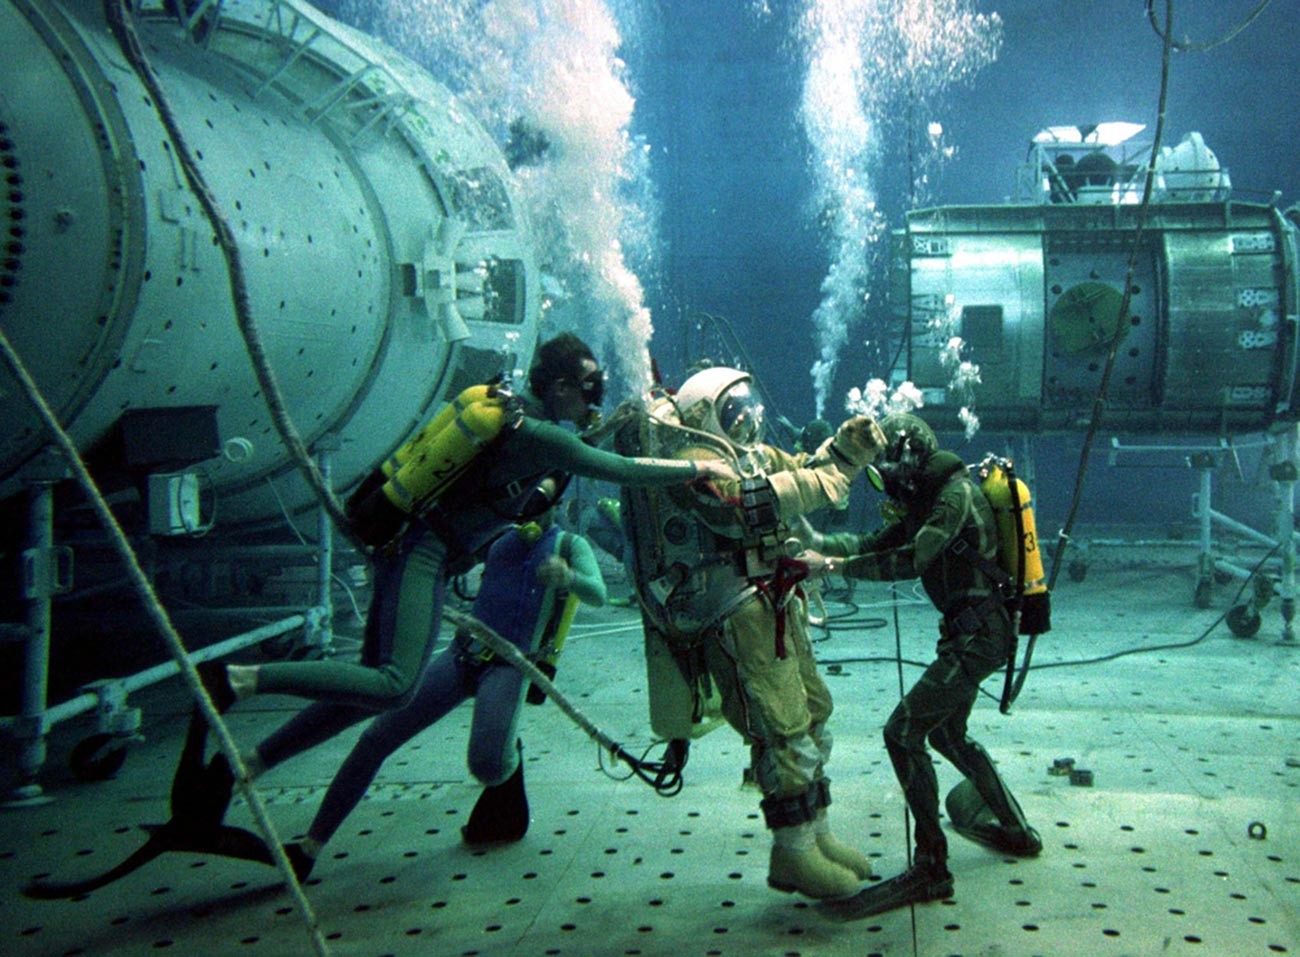 El instructor de pruebas ruso Oleg Pushkar es asistido por buzos durante las pruebas subacuáticas en una réplica de la estación espacial Mir dañada el 4 de julio de 1997.
